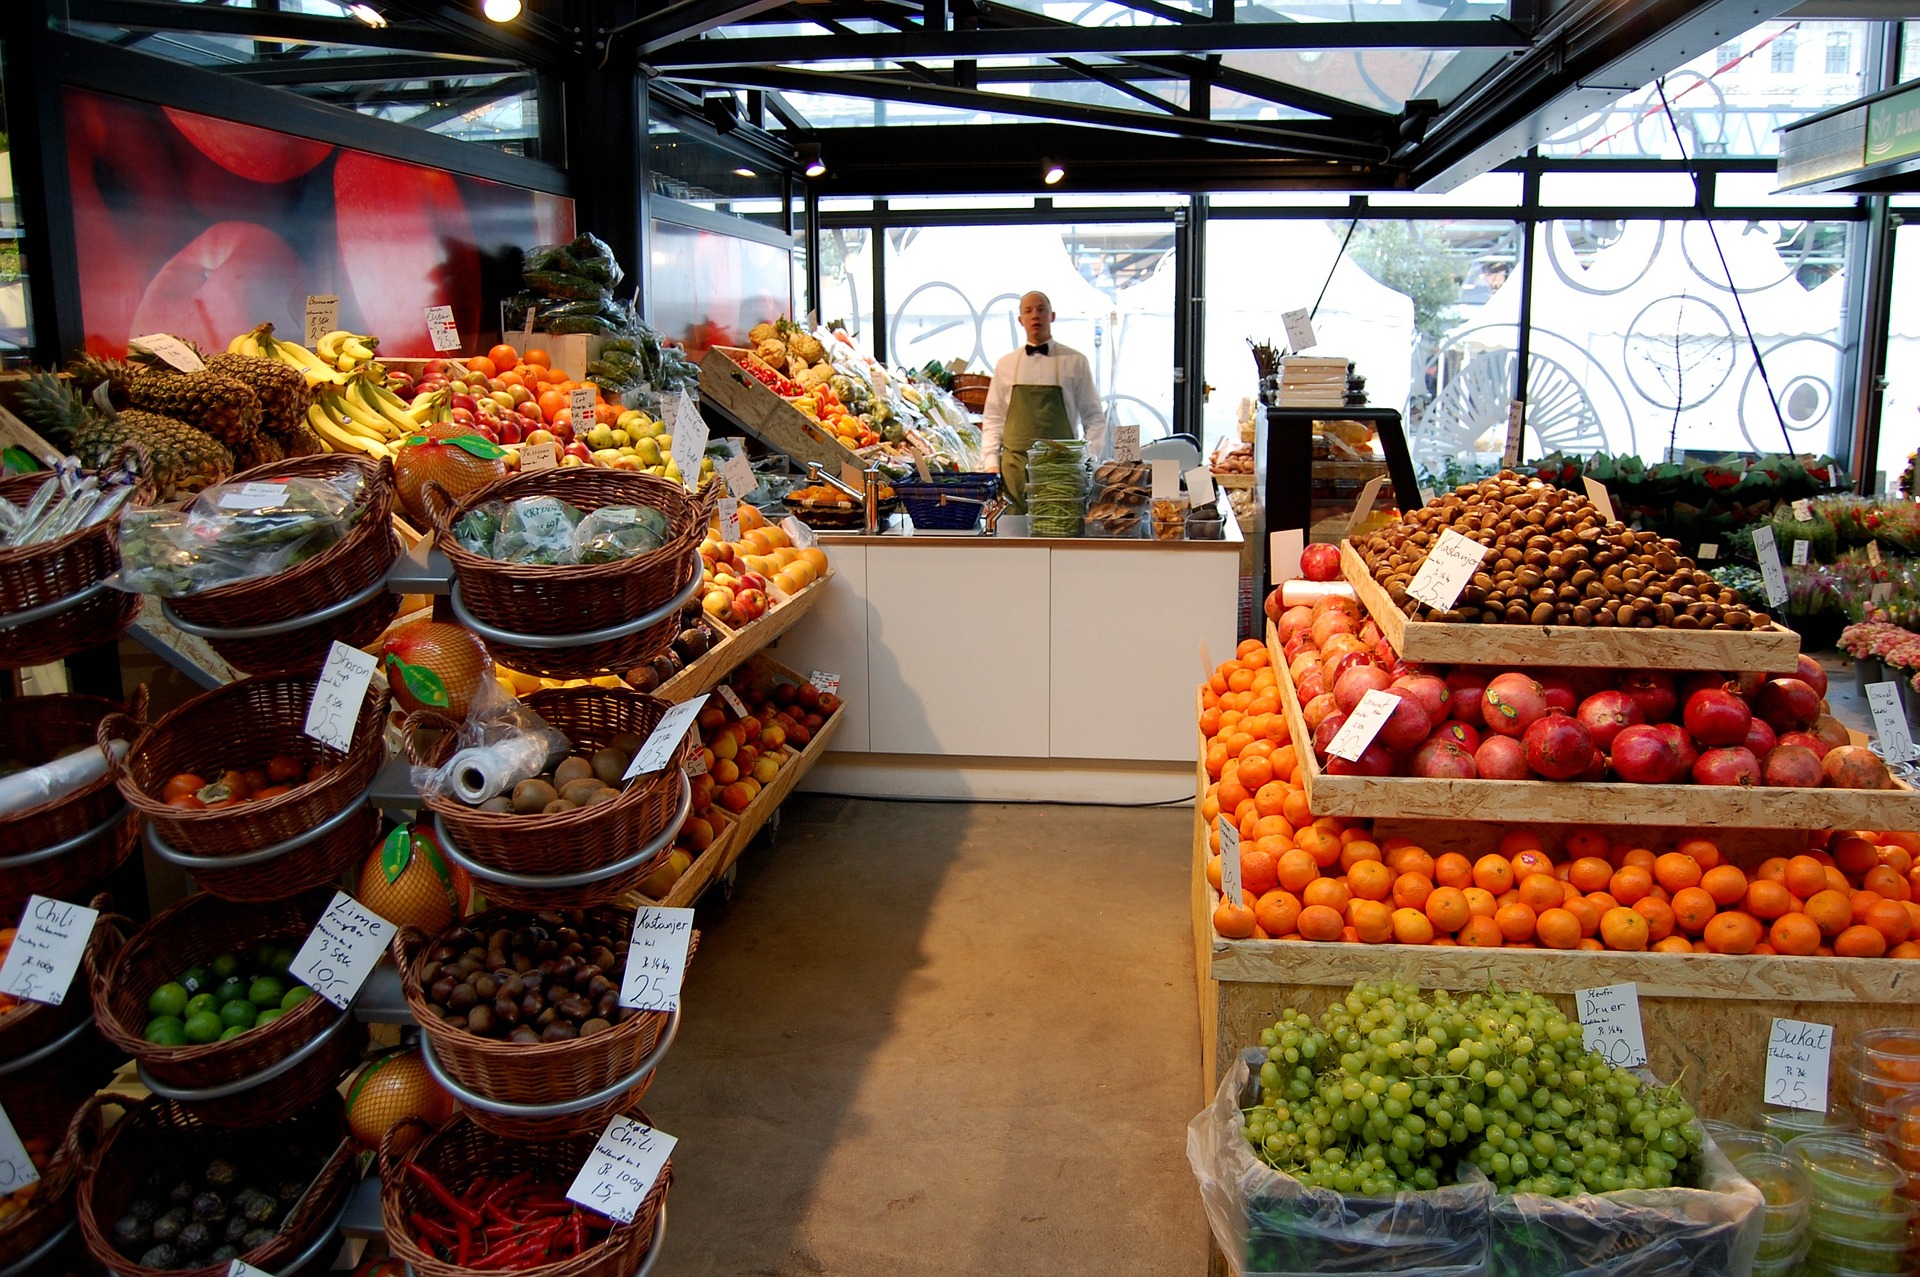 KANTAR: Polacy w gazetkach sklepowych najczęściej szukają warzyw, owoców i mięsa